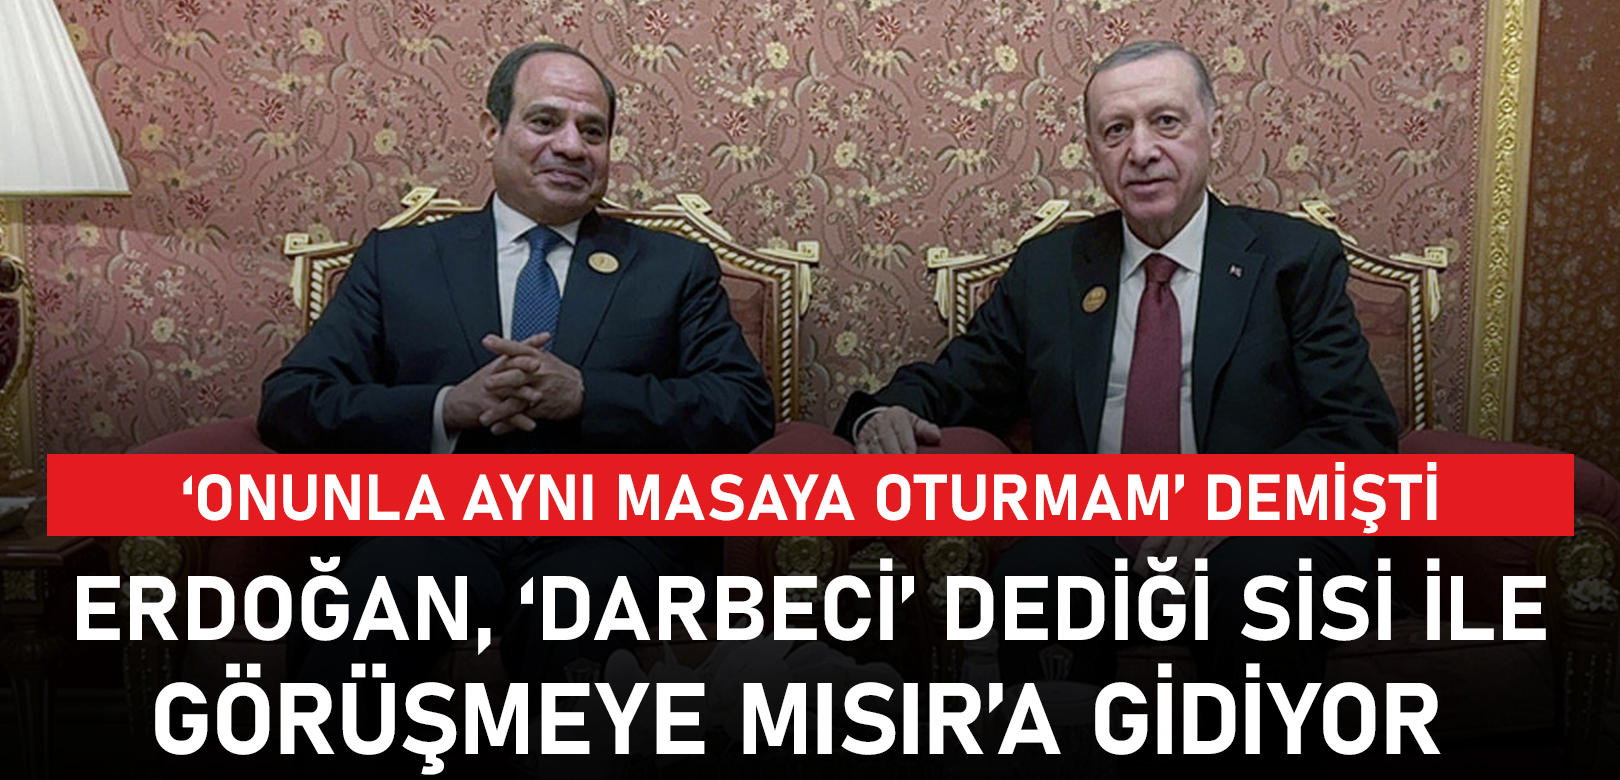 ‘Onunla aynı masaya oturmam’ diyen Erdoğan, ‘darbeci’ dediği Sisi ile görüşmeye Mısır’a gidiyor